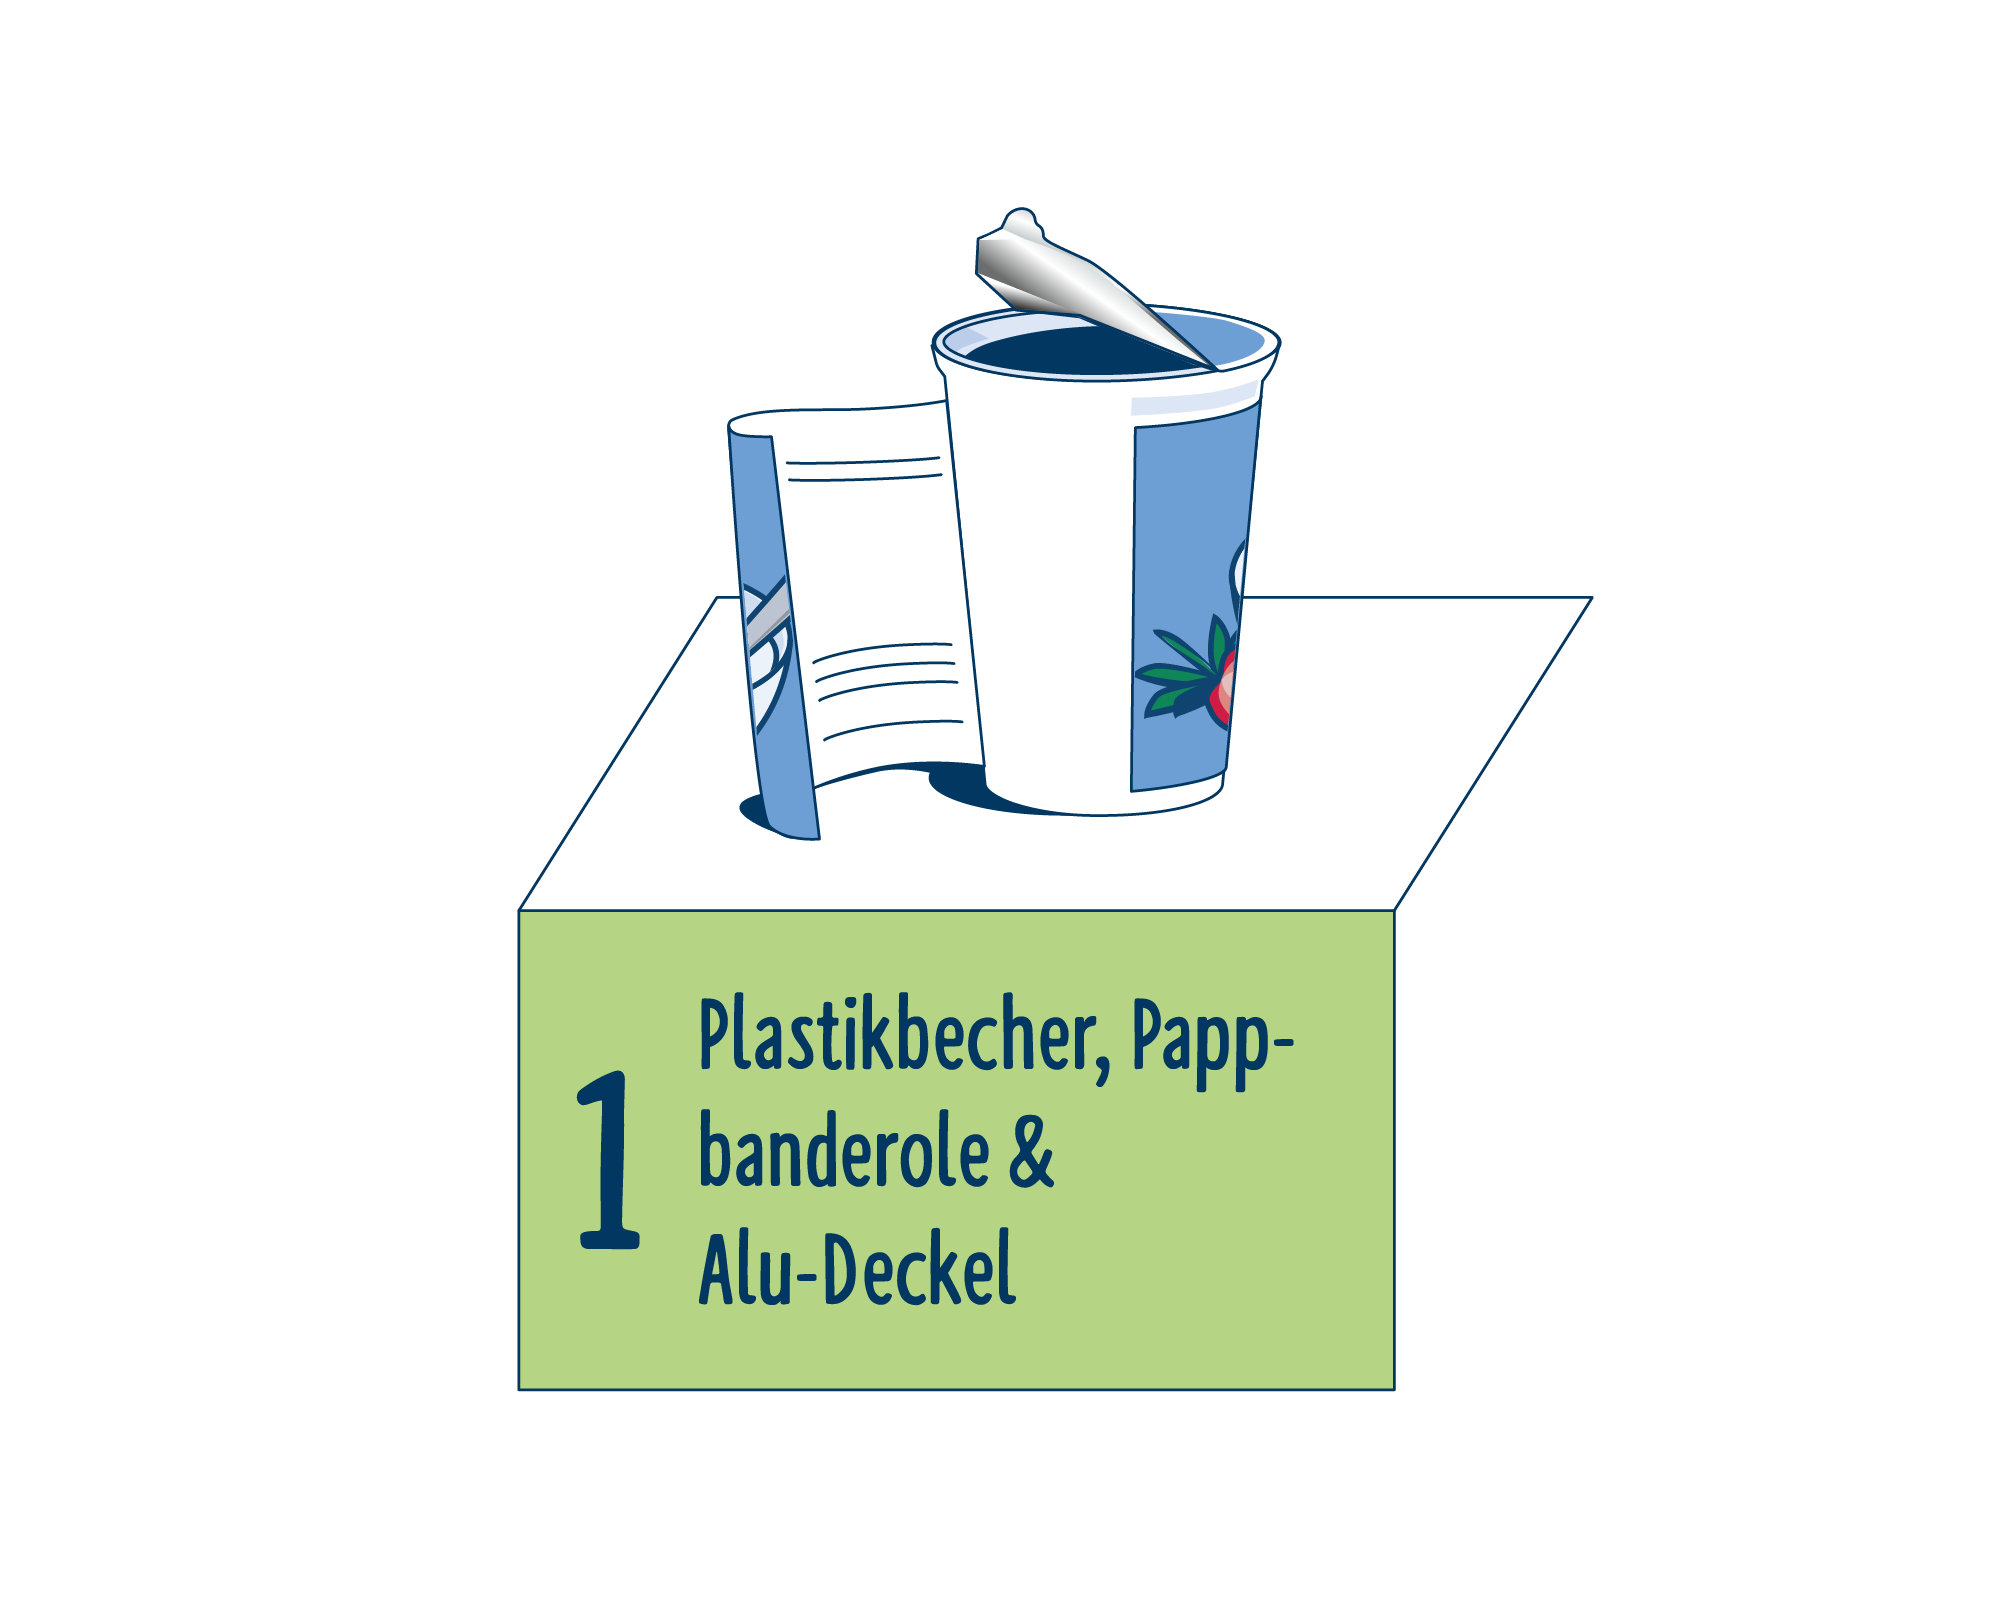 Bild Produktverpackung von Joghurt & Desserts eingeordnet auf Platz 1, bestehend aus Plastikbecher, Pappbanderole & Alu-Deckel.